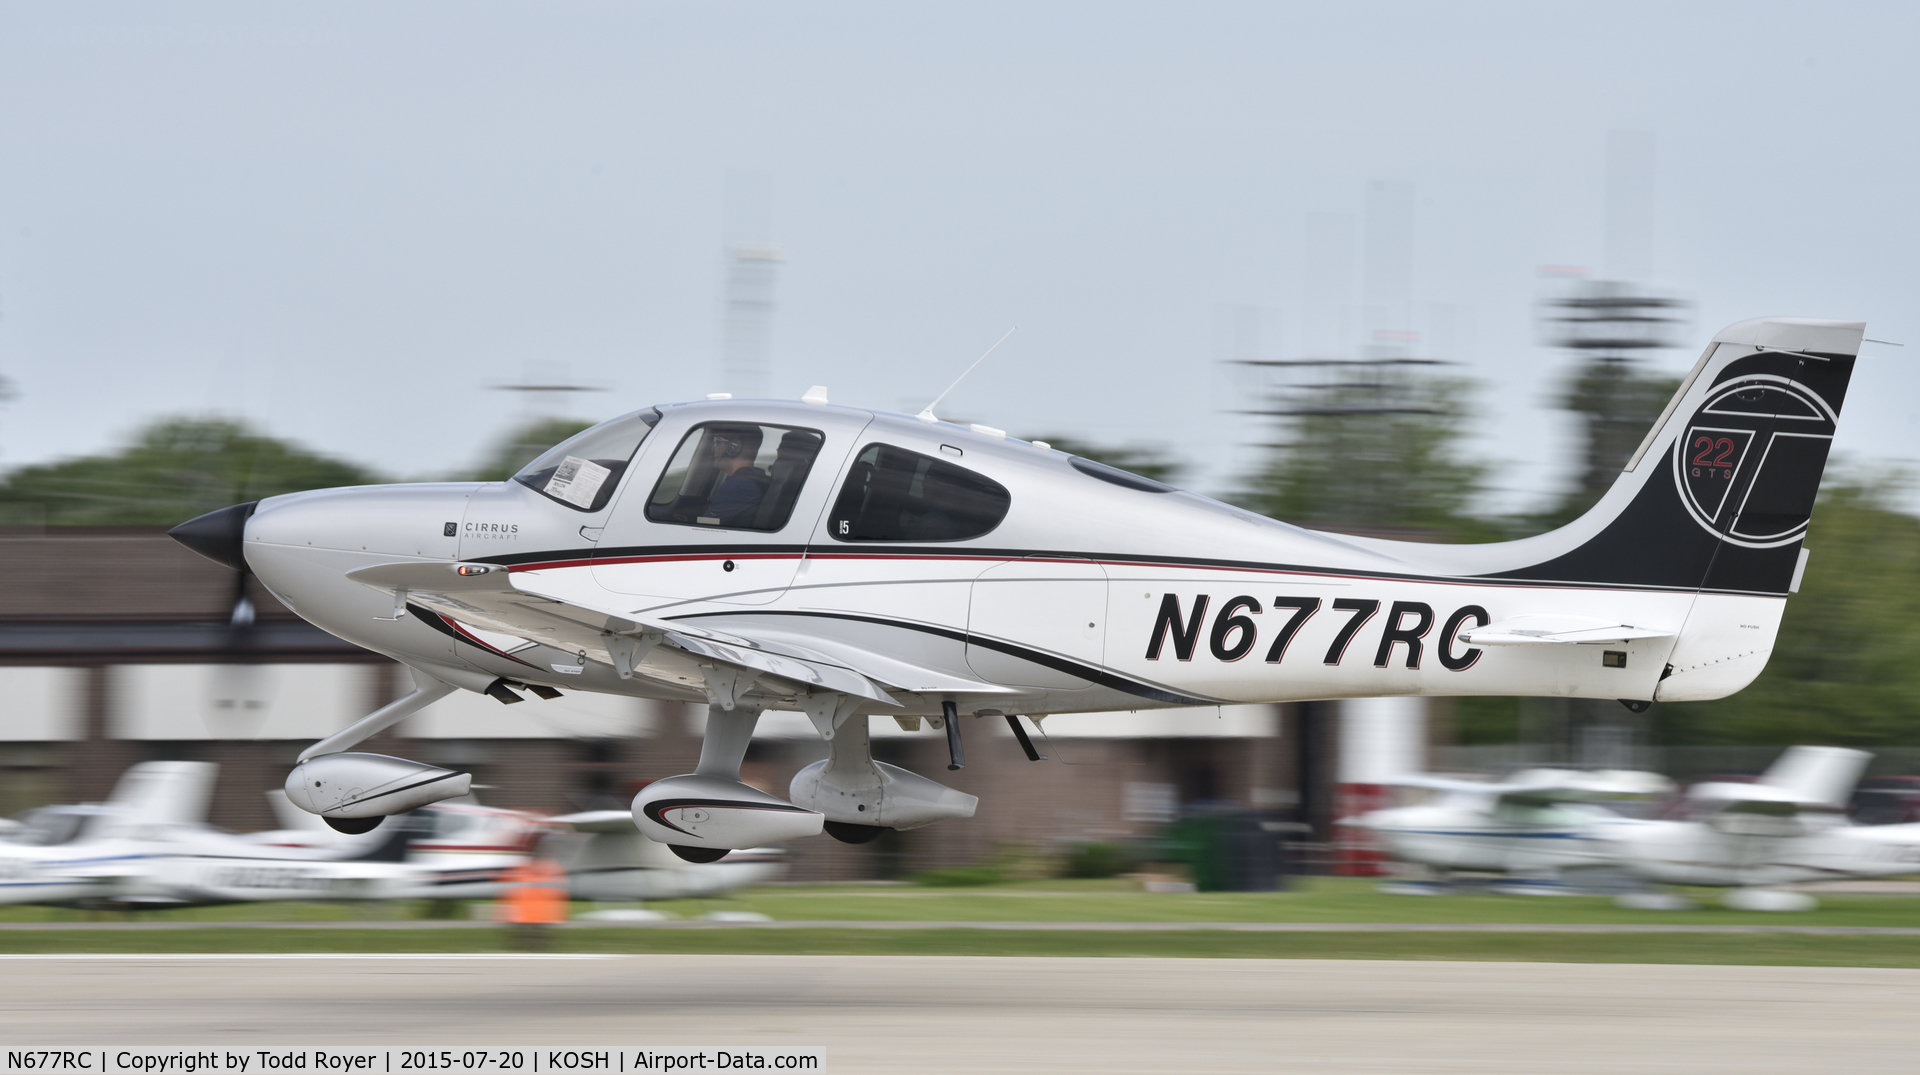 N677RC, 2013 Cirrus SR22T C/N 0631, Airventure 2015